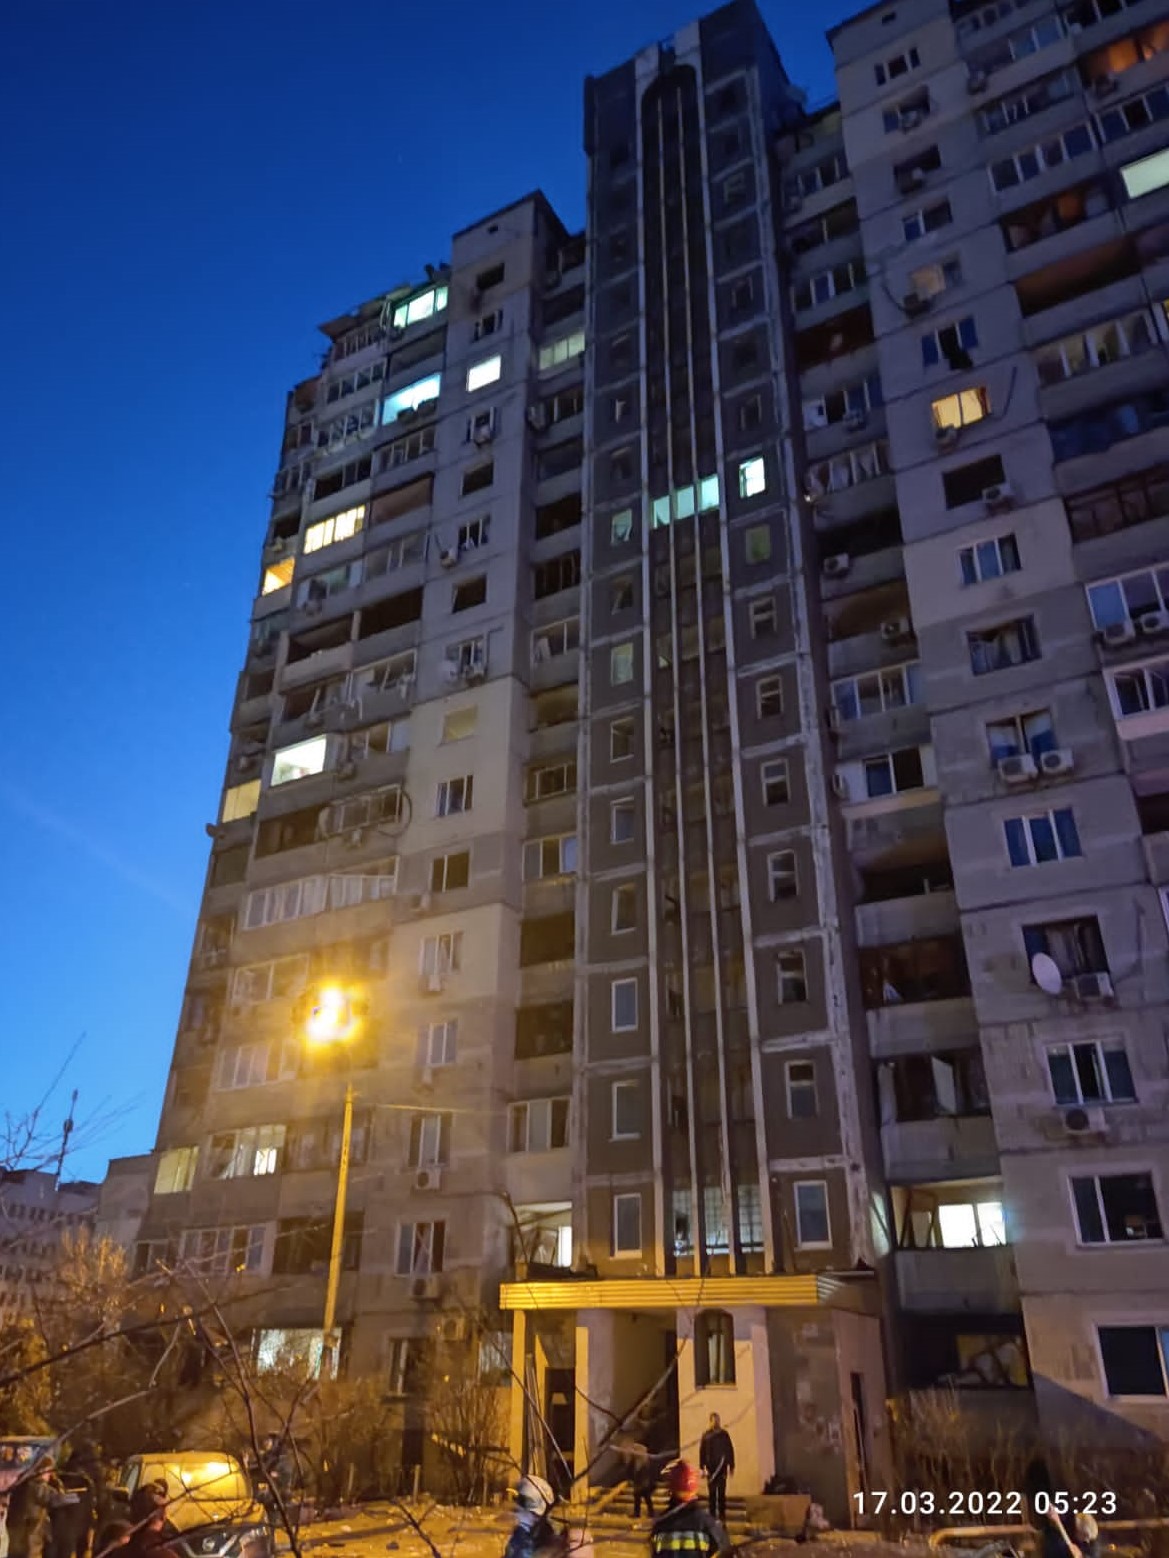 Χρήστος Νικολαίδης – Χτύπηθηκε πολυκατοικία τα ξημερώματα στο Κίεβο (ΒΙΝΤΕΟ)